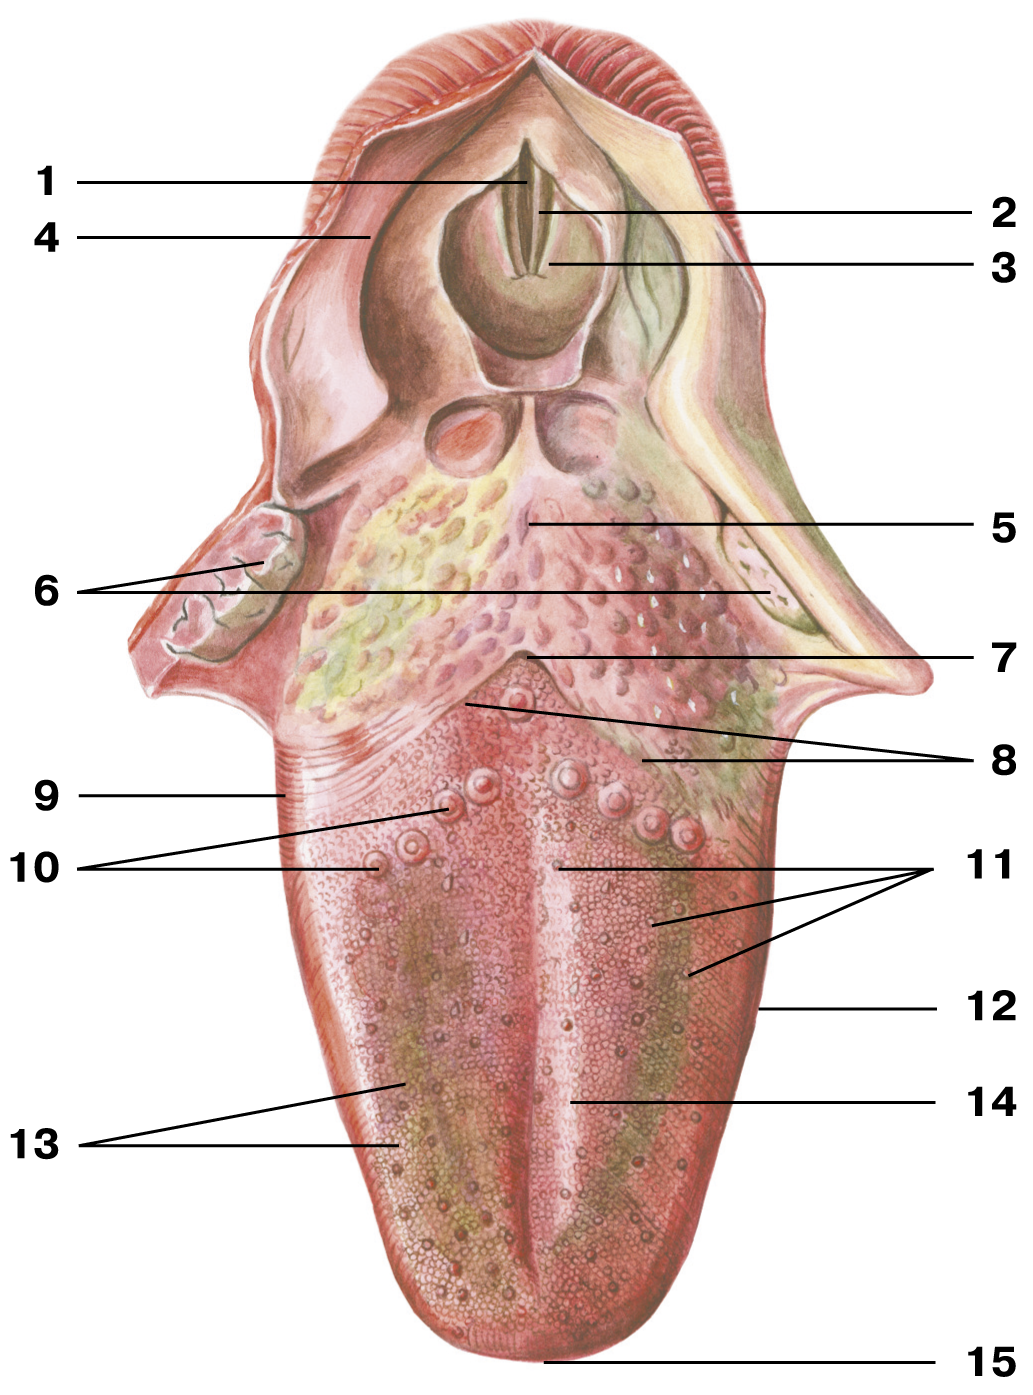 Полость рта костные стенки. Желобовидные сосочки корня языка. Язычная миндалина анатомия. Грибовидные сосочки языка анатомия. Черпалонадгортанная складка анатомия.